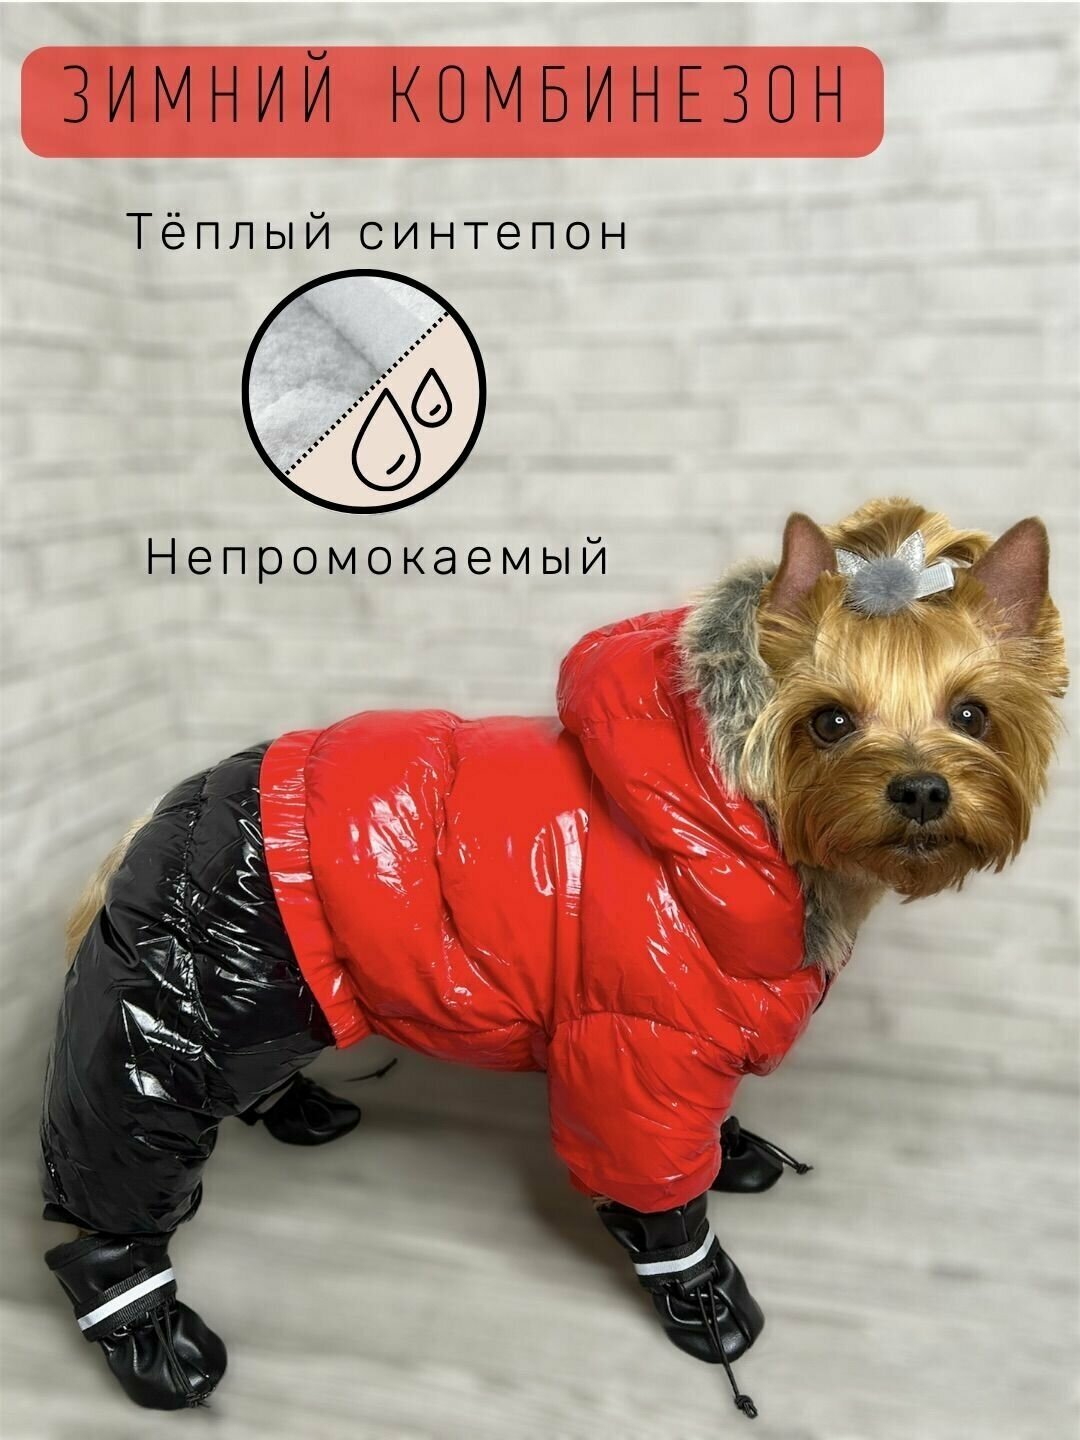 Зимний комбинезон для собак всех пород / Непромокаемый / Плотный синтепон / Размер 10 / Красный